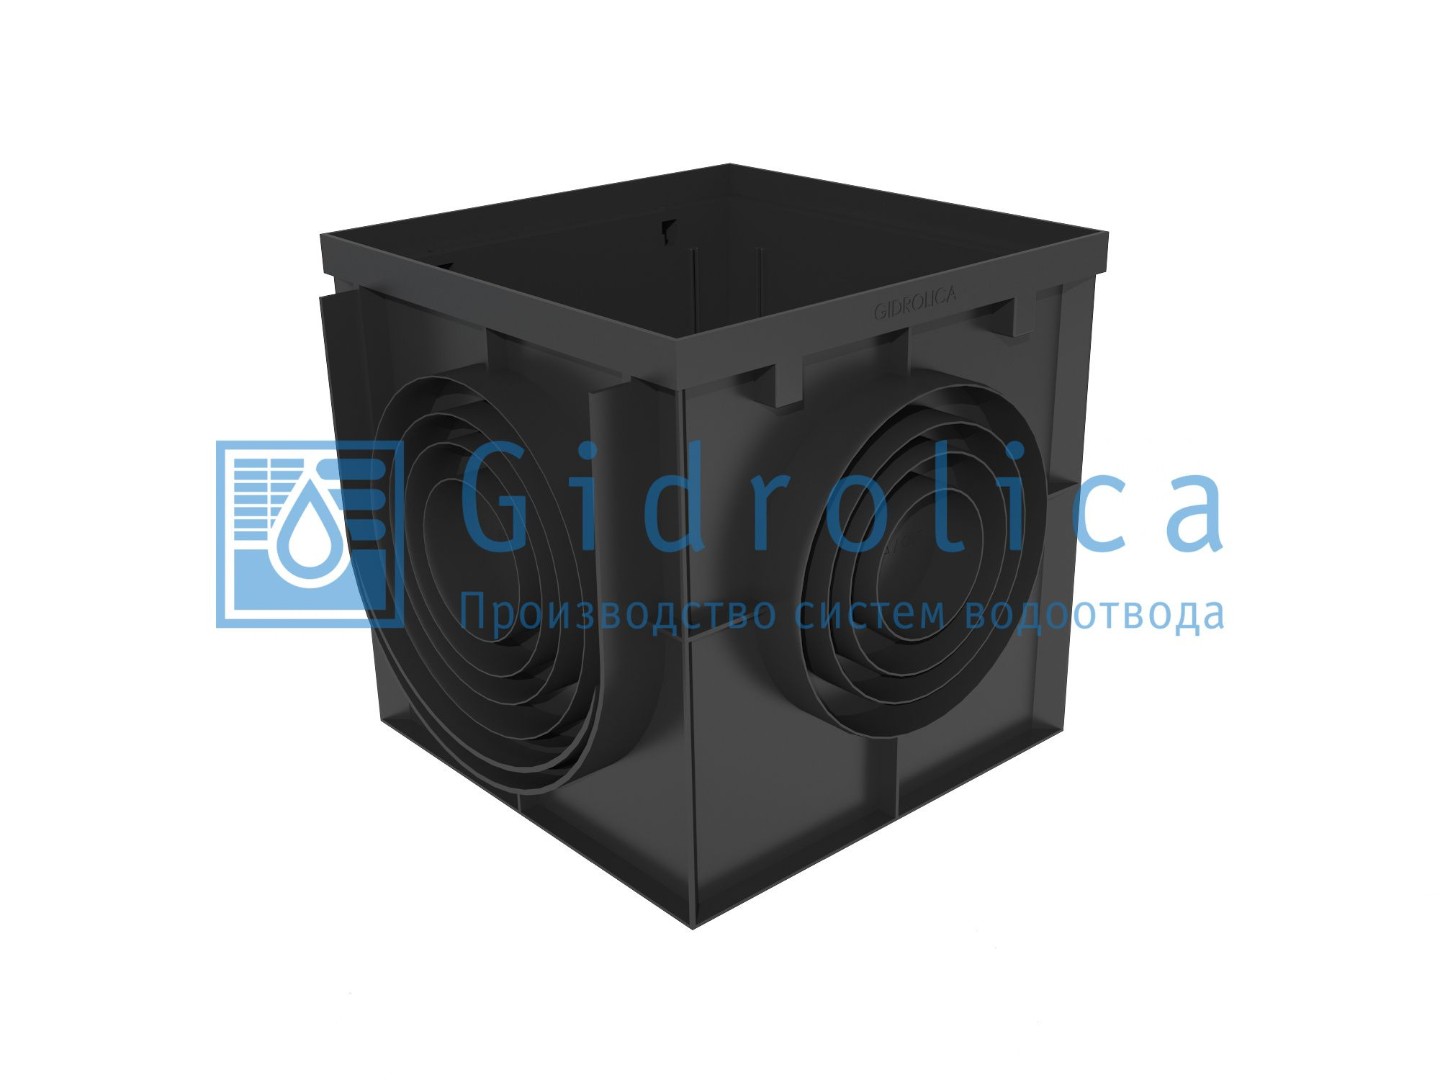 Дождеприемник Gidrolica Point ДП-40.40 - пластиковый, арт. 239